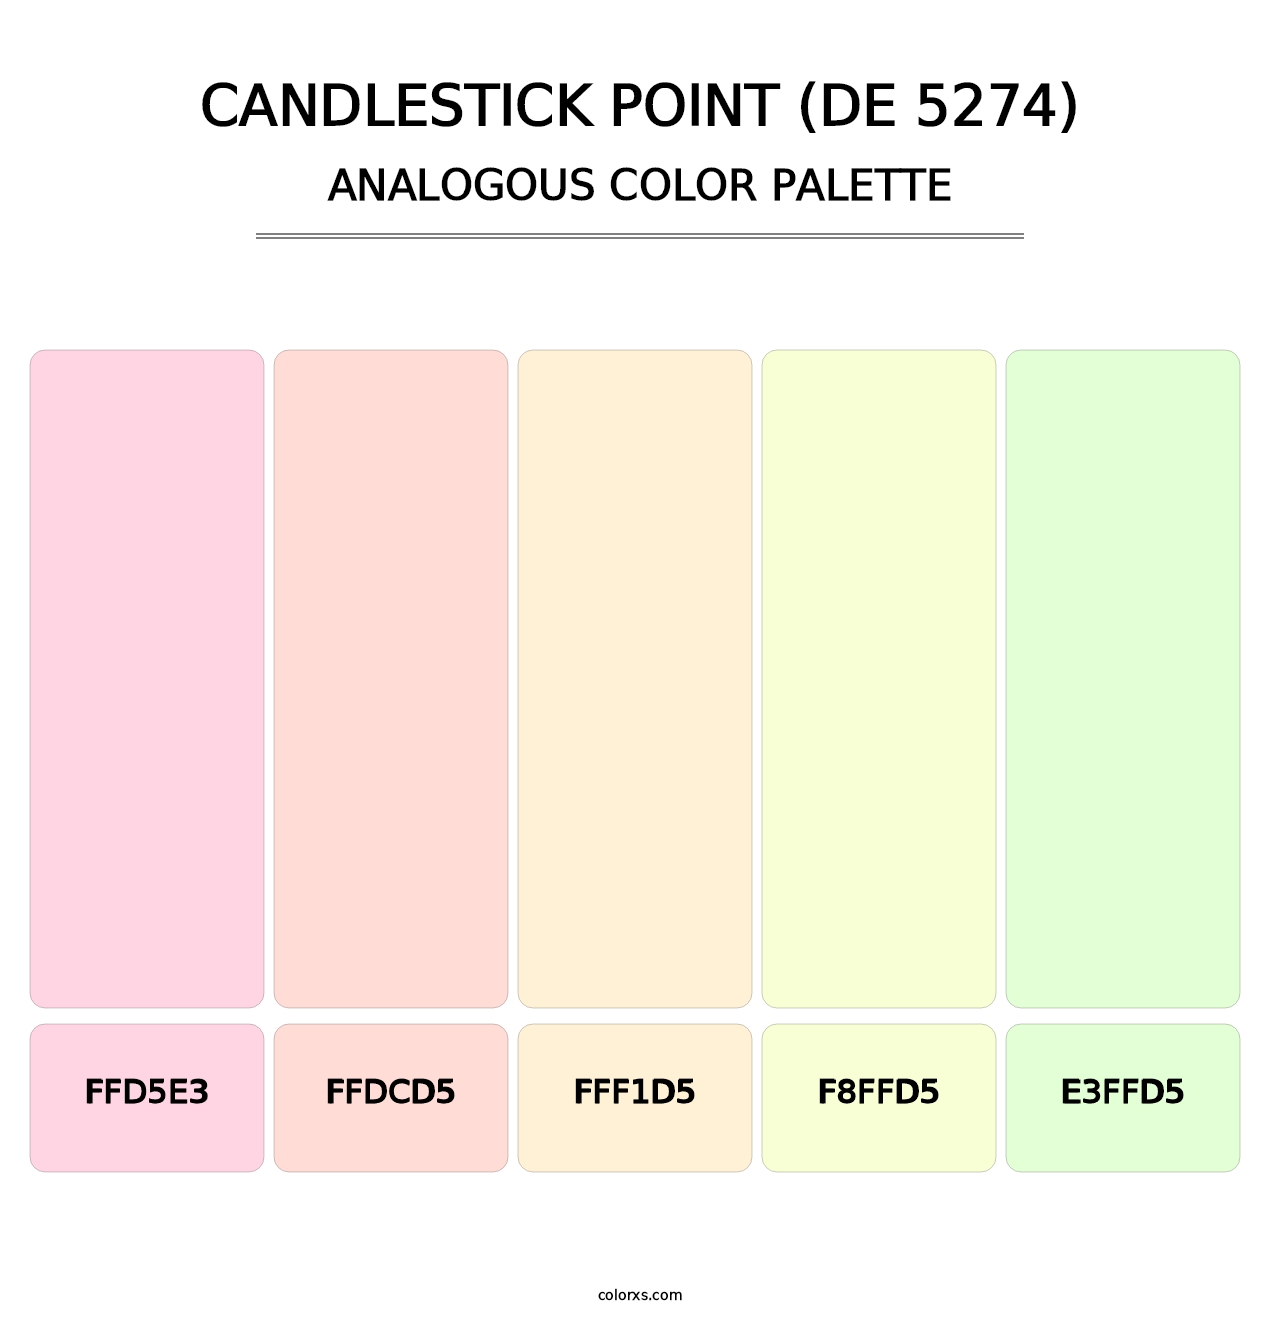 Candlestick Point (DE 5274) - Analogous Color Palette